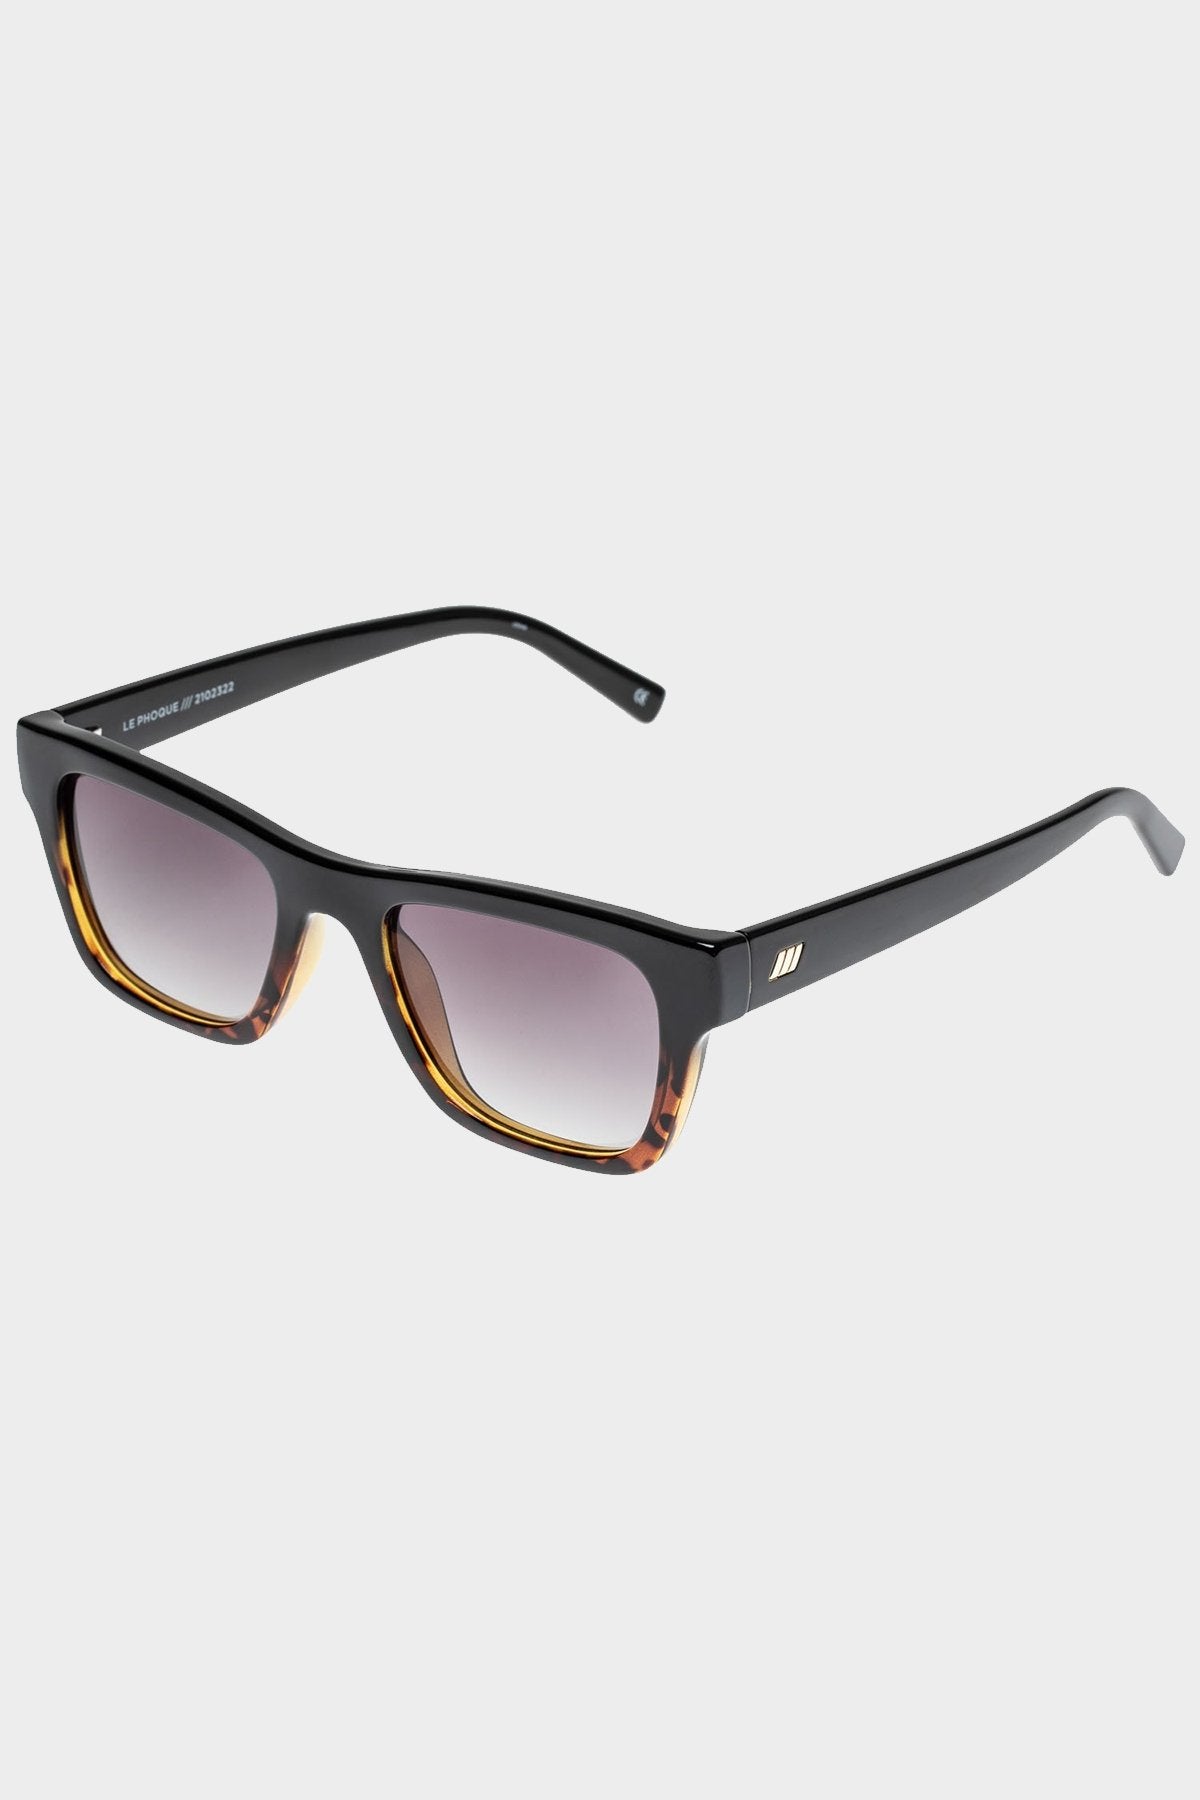 Le Phoque Sunglasses in Black Tort Splice - shop-olivia.com